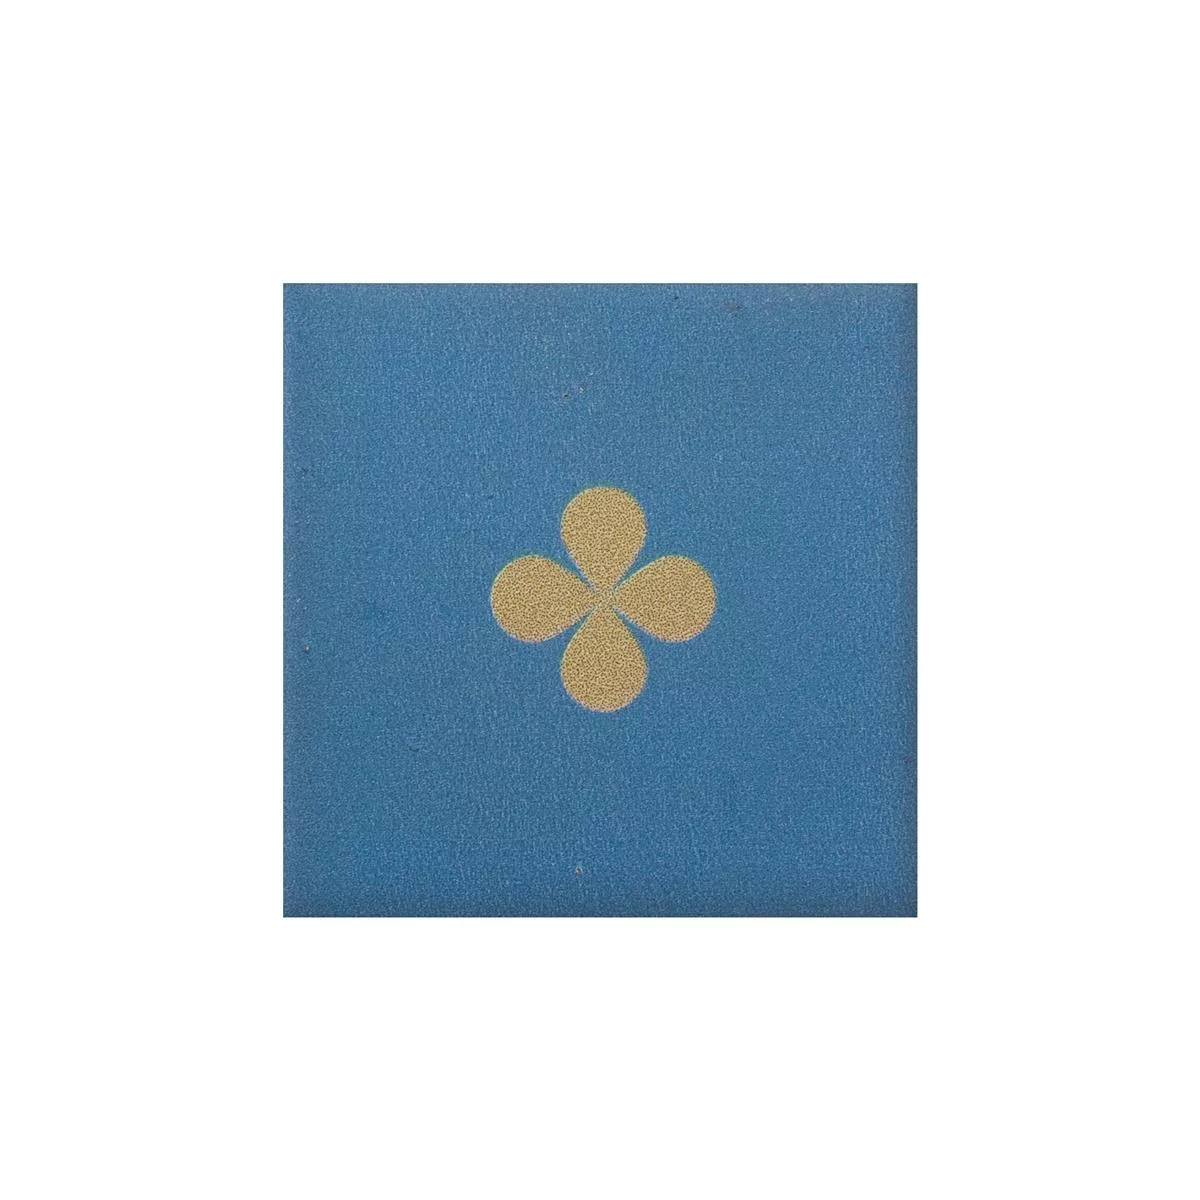 Gresie Portelanata Gresie Genexia Decor Albastru Rosone 4,6x4,6cm